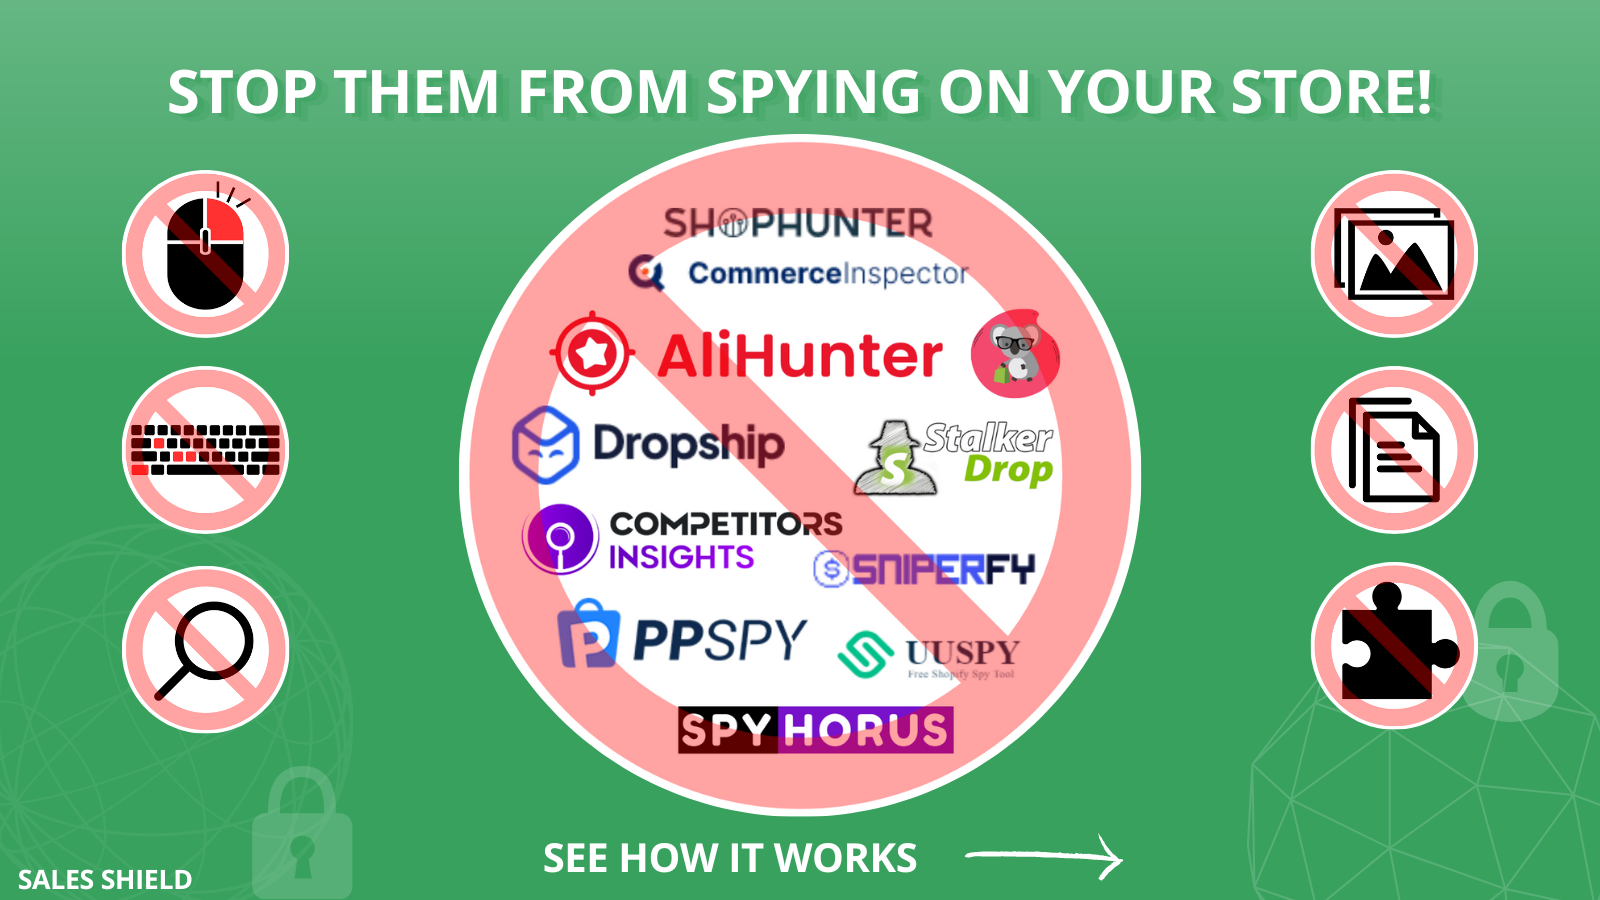 Stoppa dem från att spionera på din butik! Shophunter, ppspy, uuspy